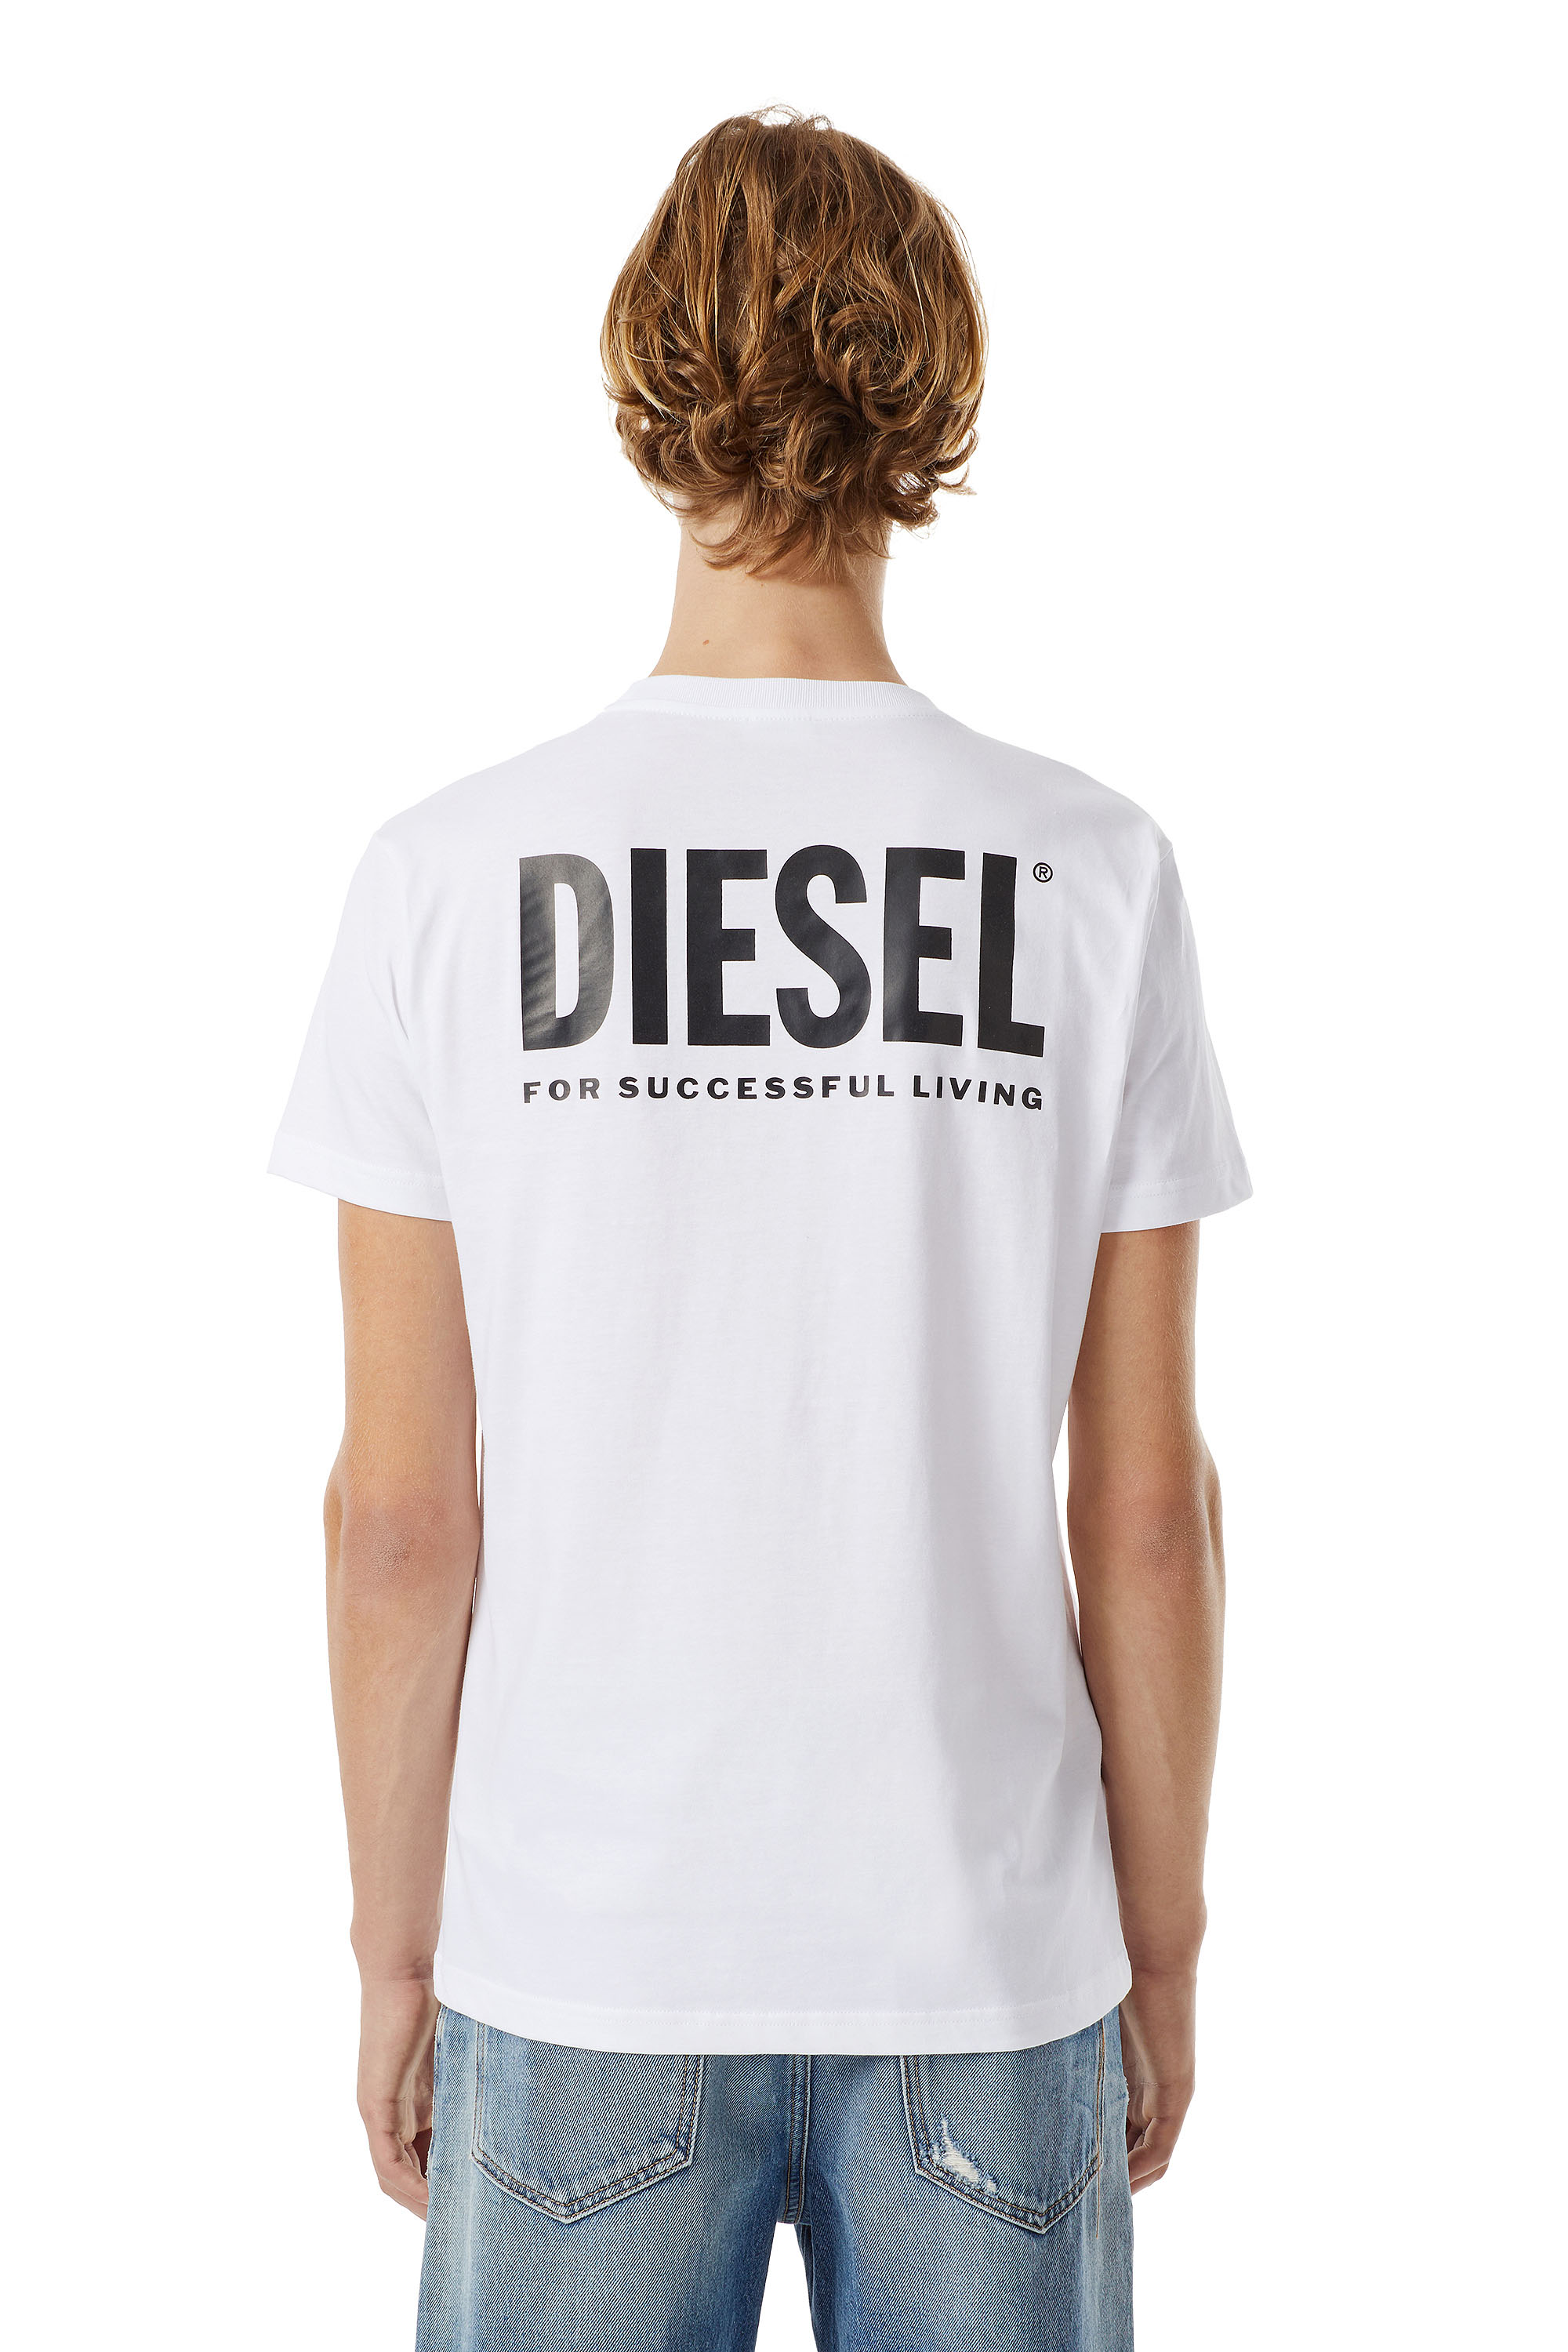 Diesel - LR-T-DIEGO-VIC, Bianco - Image 2